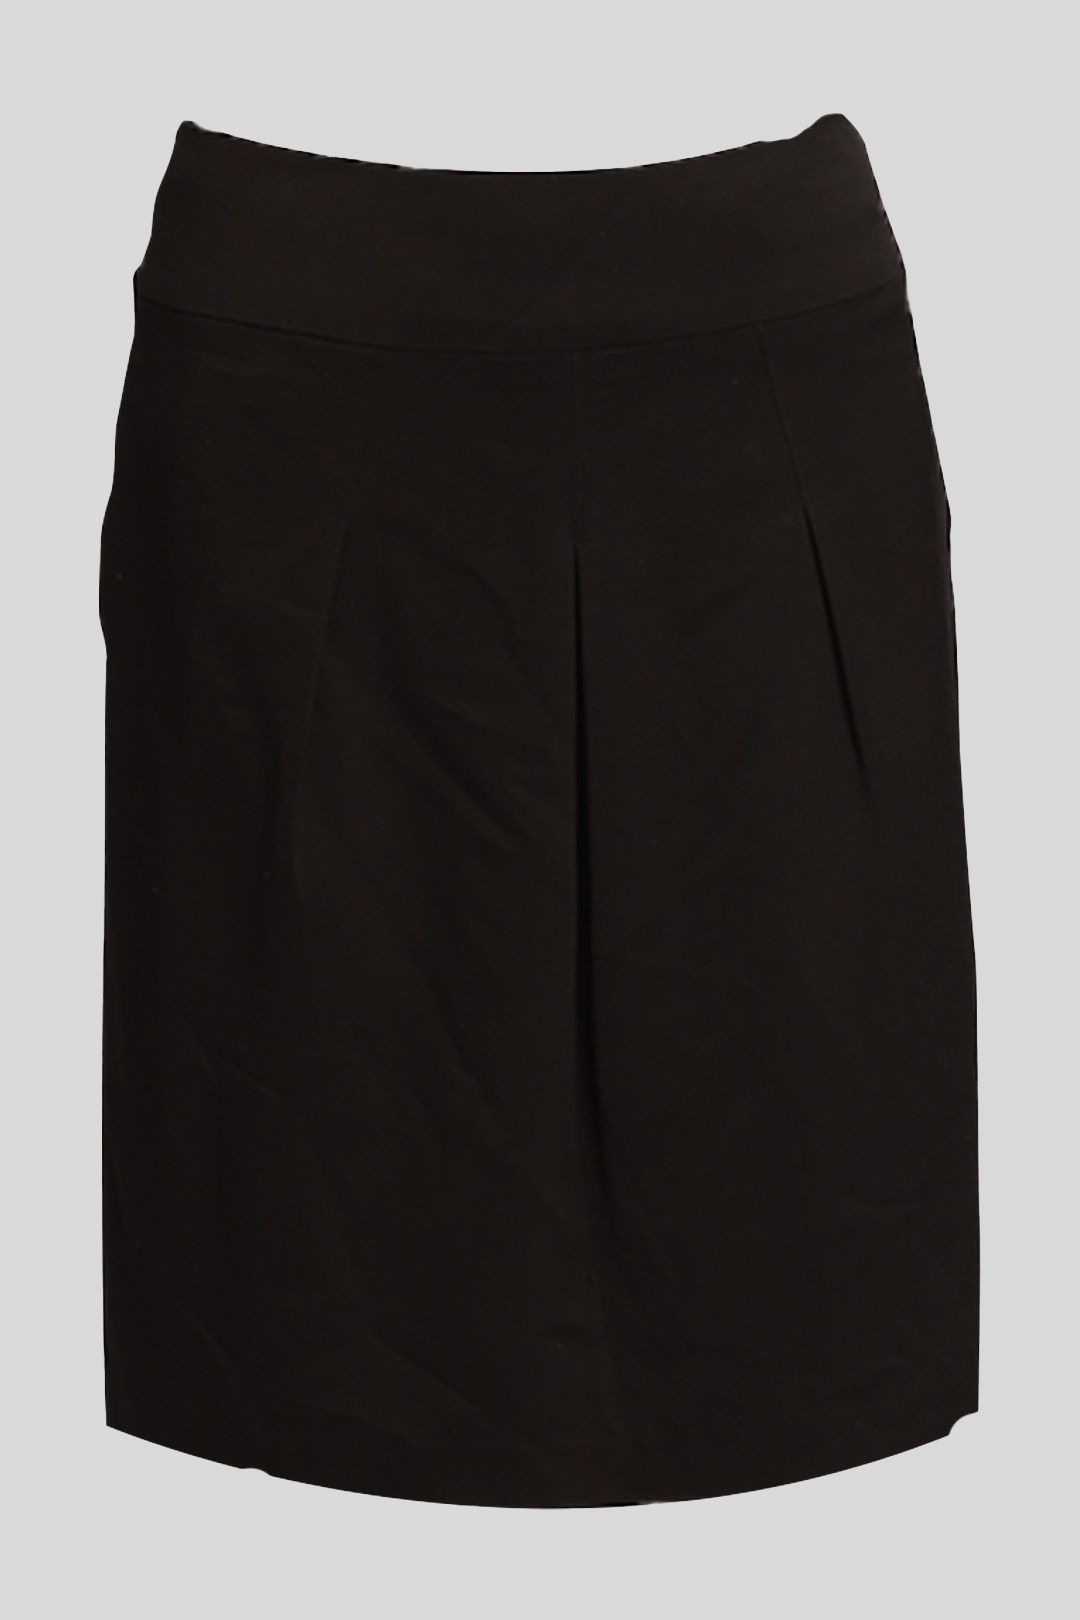 Buy Black A Line Skirt | Oroton | GlamCorner